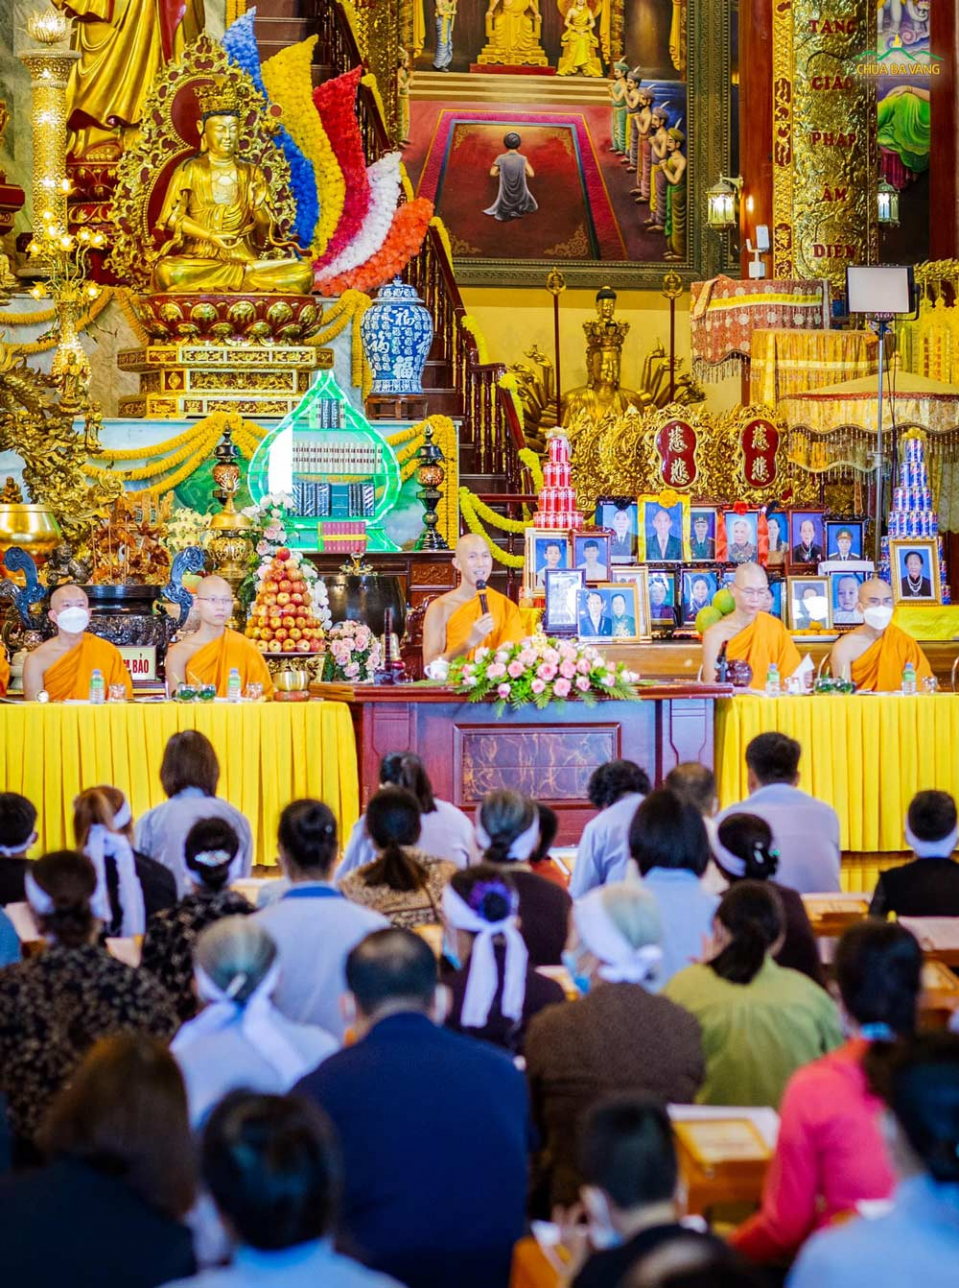 Thể theo lời thỉnh cầu của các Phật tử và nhân dân thập phương, được sự chỉ dạy trên Sư Phụ Thích Trúc Thái Minh, chùa Ba Vàng tổ chức Lễ cầu siêu cho các chúng sinh trong cõi tâm linh sáng nay - ngày 14/9/Nhâm Dần (tức 09/10/2022)